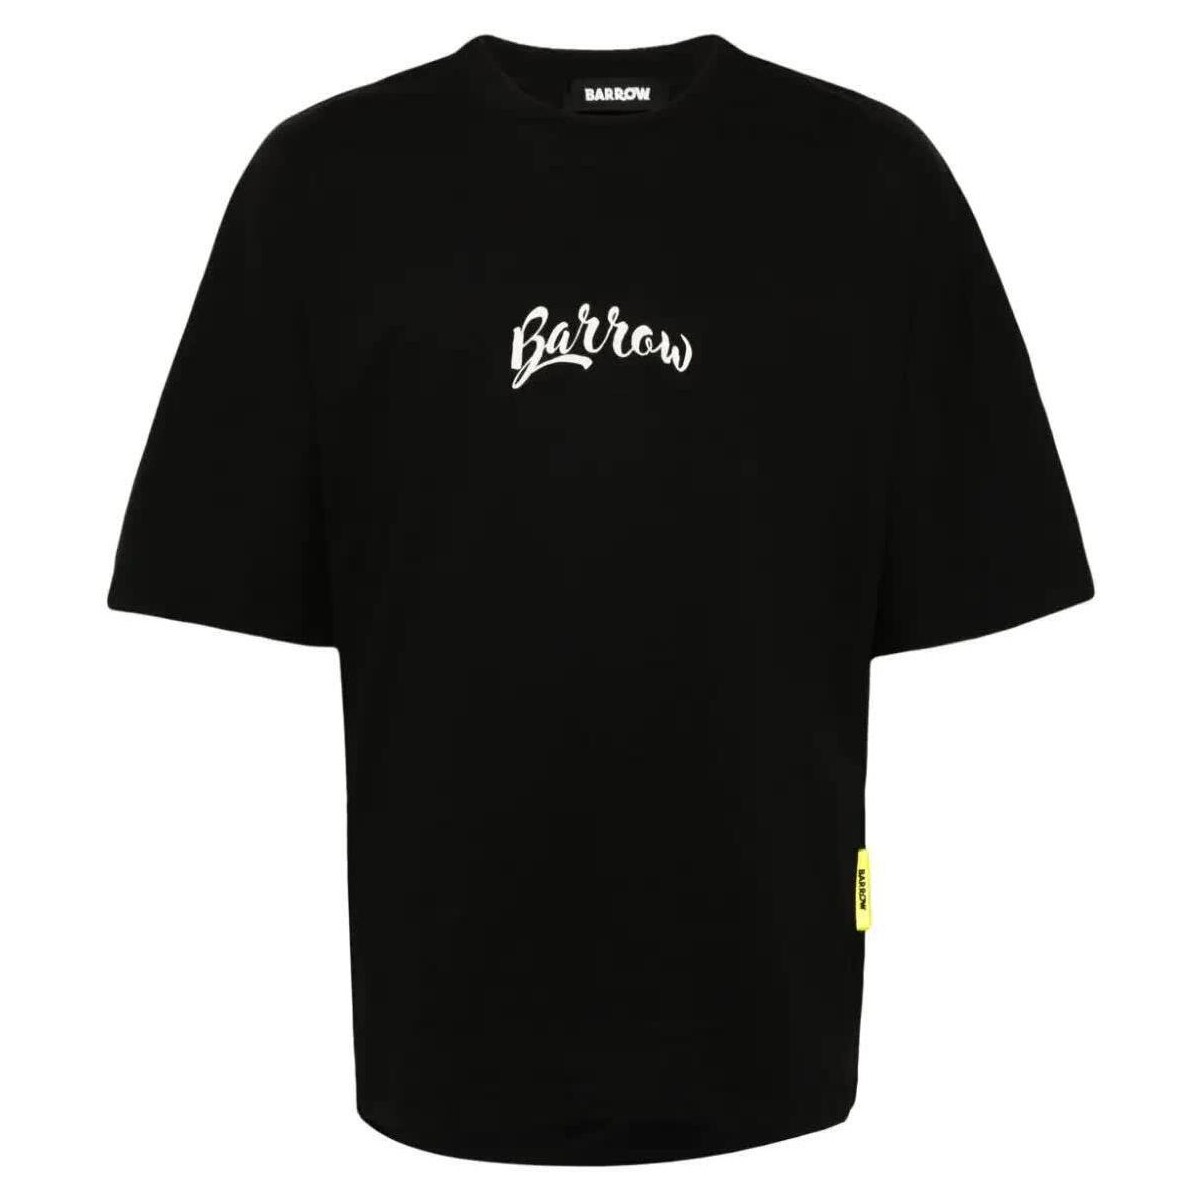 Abbigliamento T-shirt maniche corte Barrow T-SHIRT IN JERSEY Nero